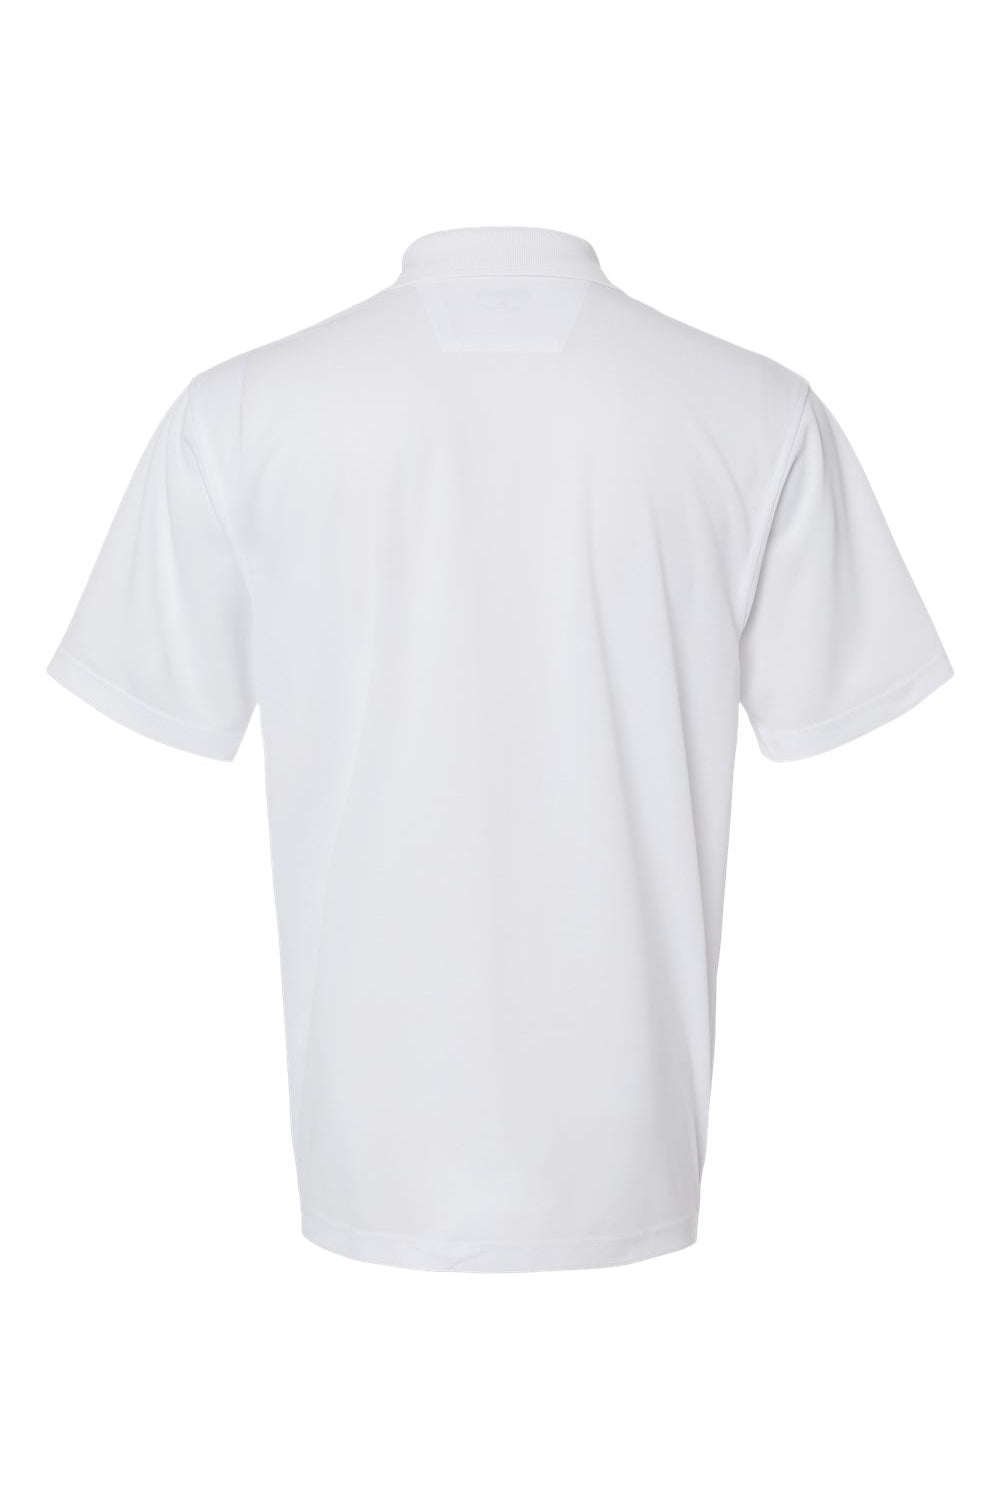 Paragon 100 Mens Saratoga Performance Mini Mesh Short Sleeve Polo Shirt White Flat Back